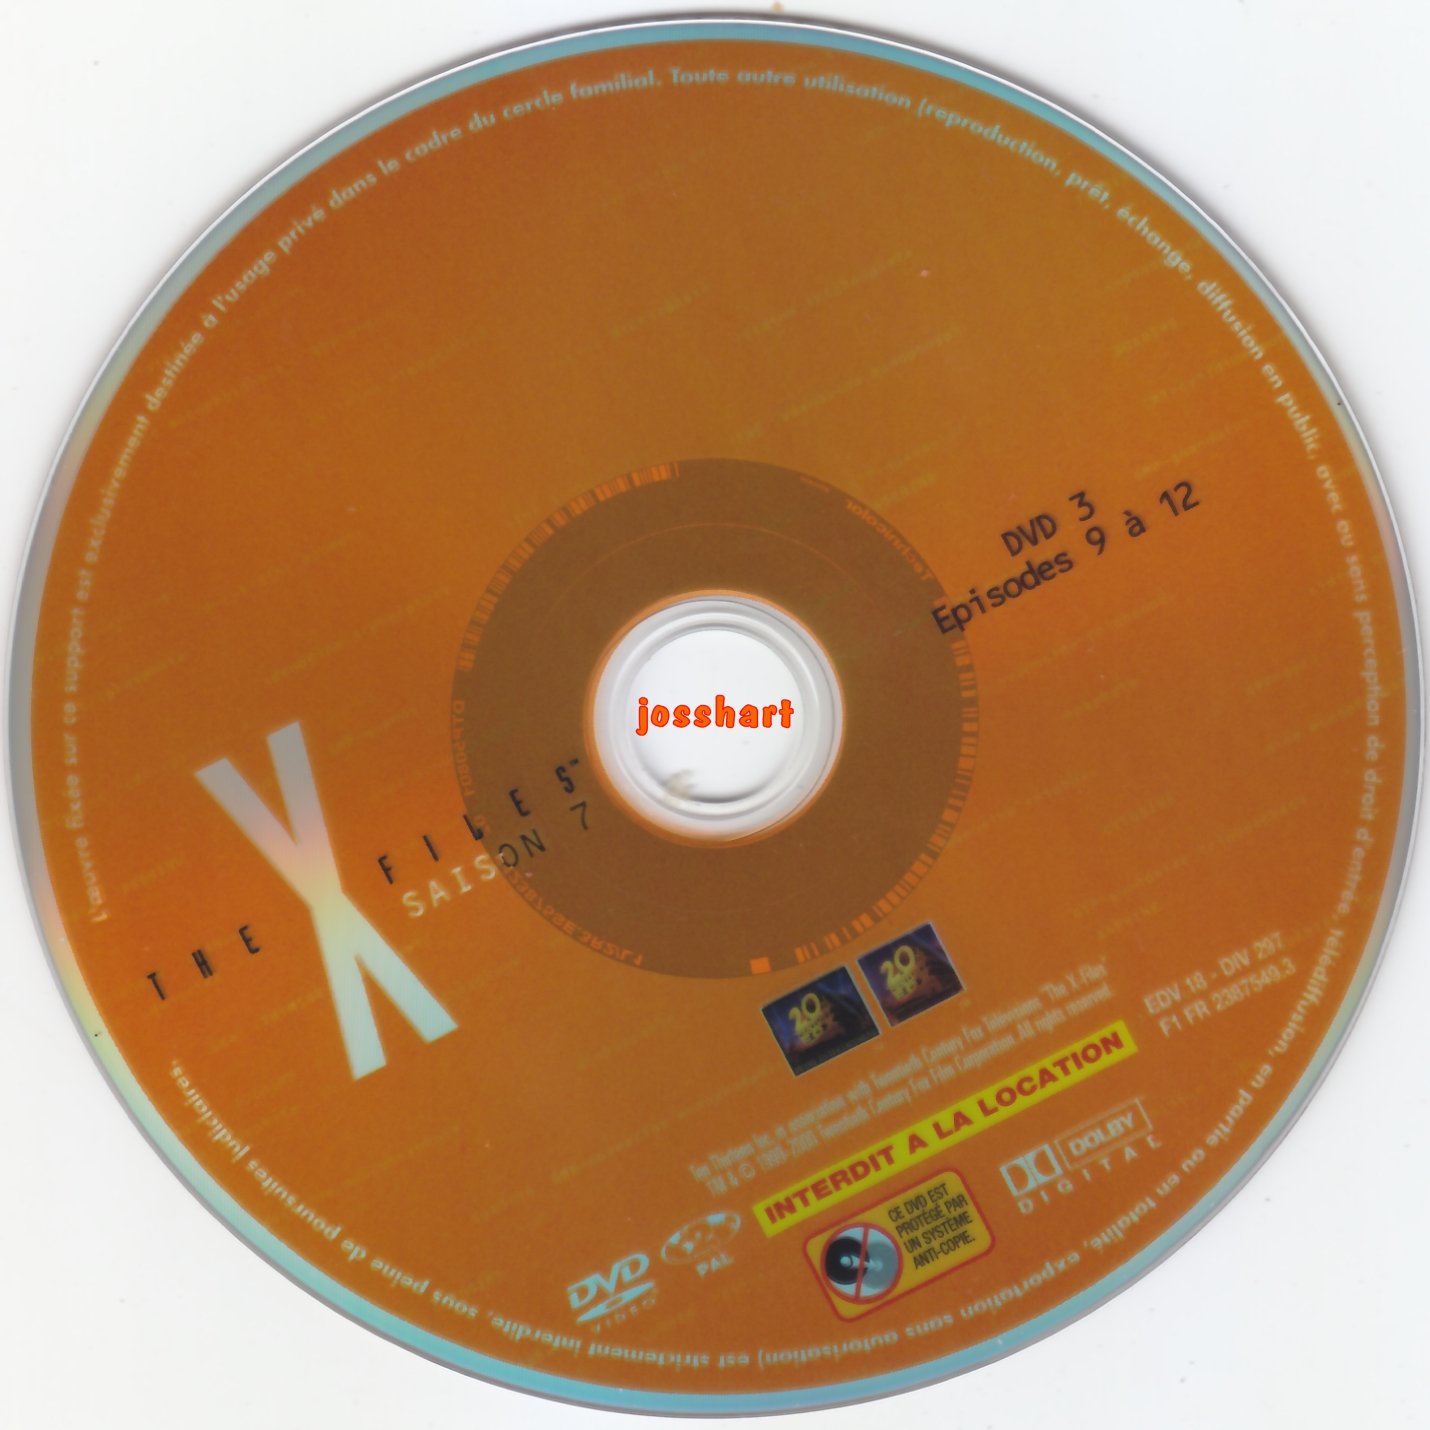 The X Files Saison 7 DVD 3 v2